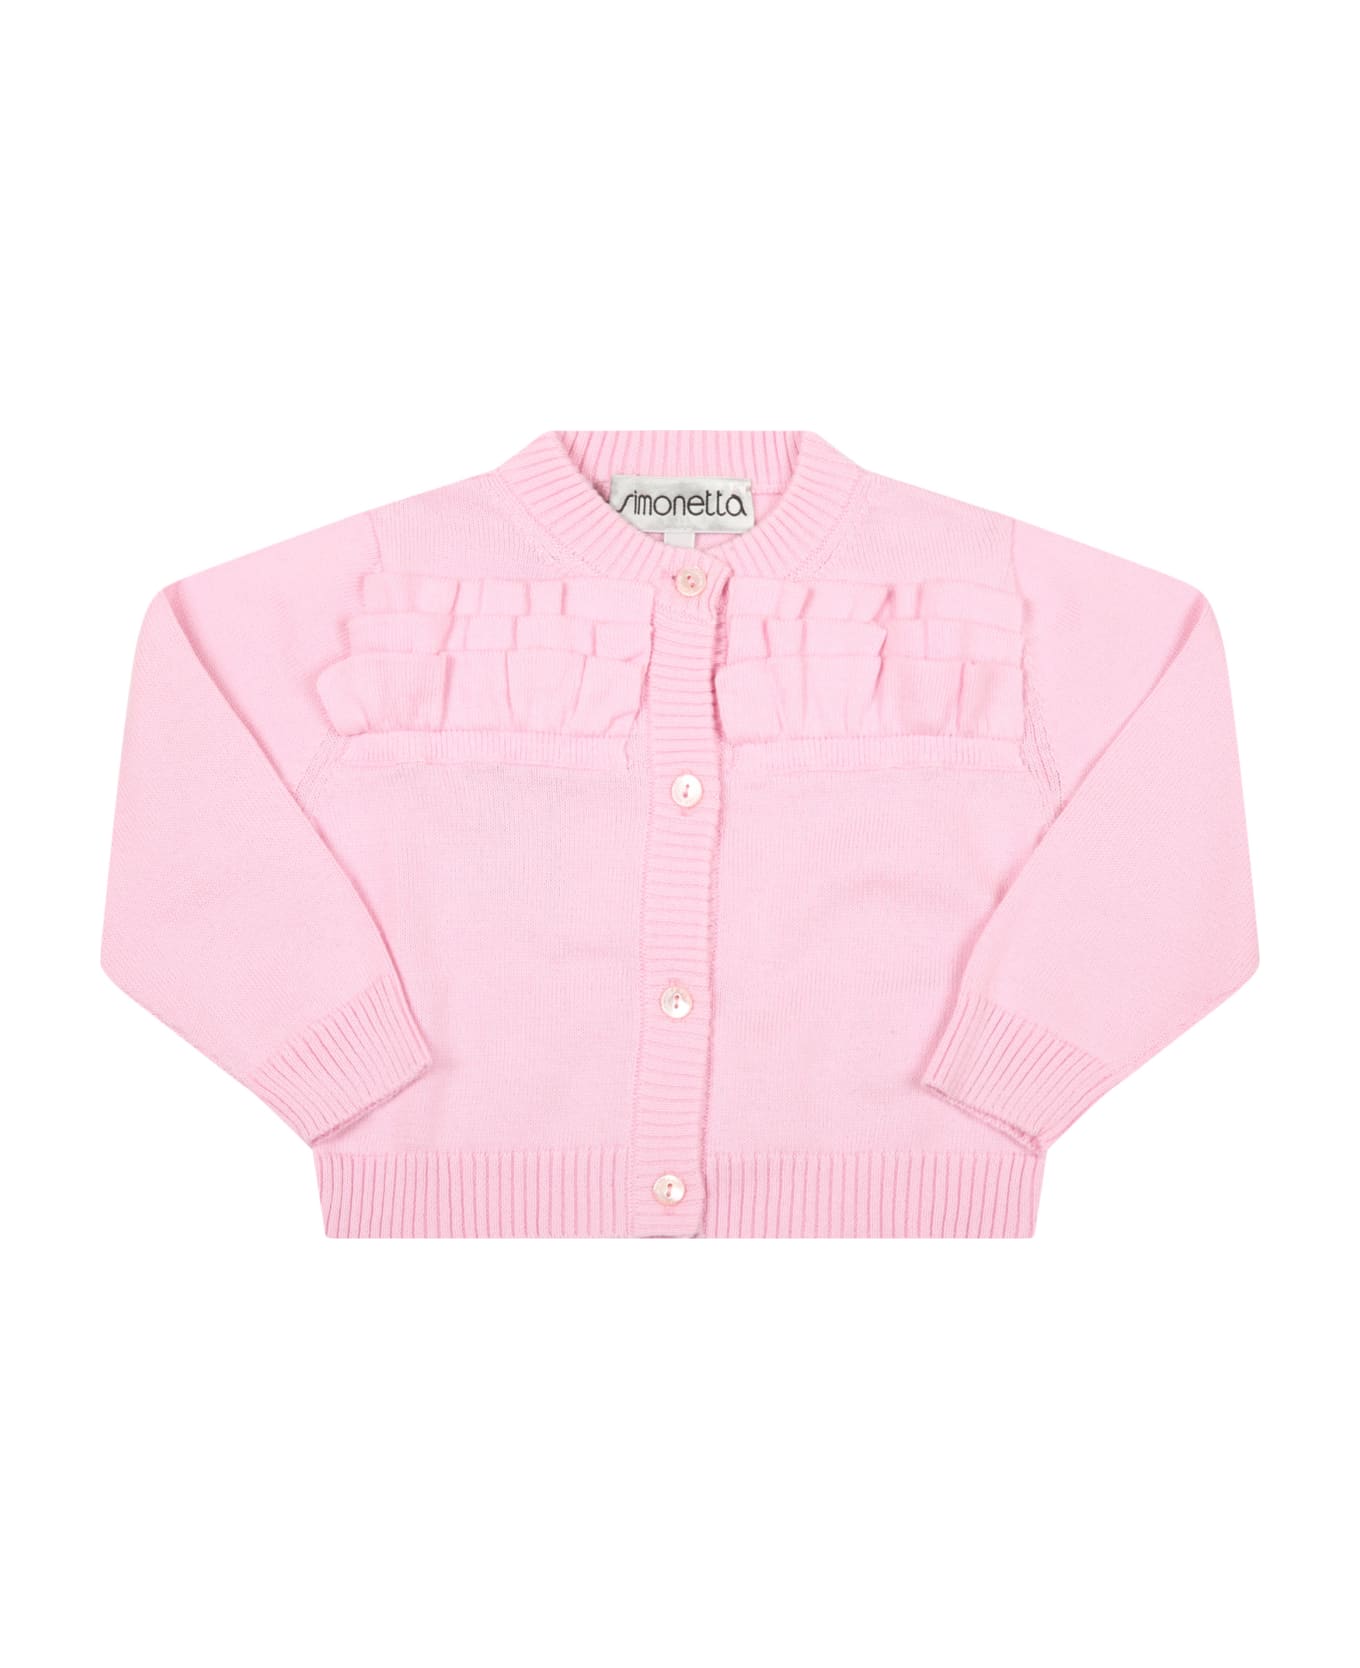 Simonetta Pink Cardigan For Baby Girl - Pink ニットウェア＆スウェットシャツ